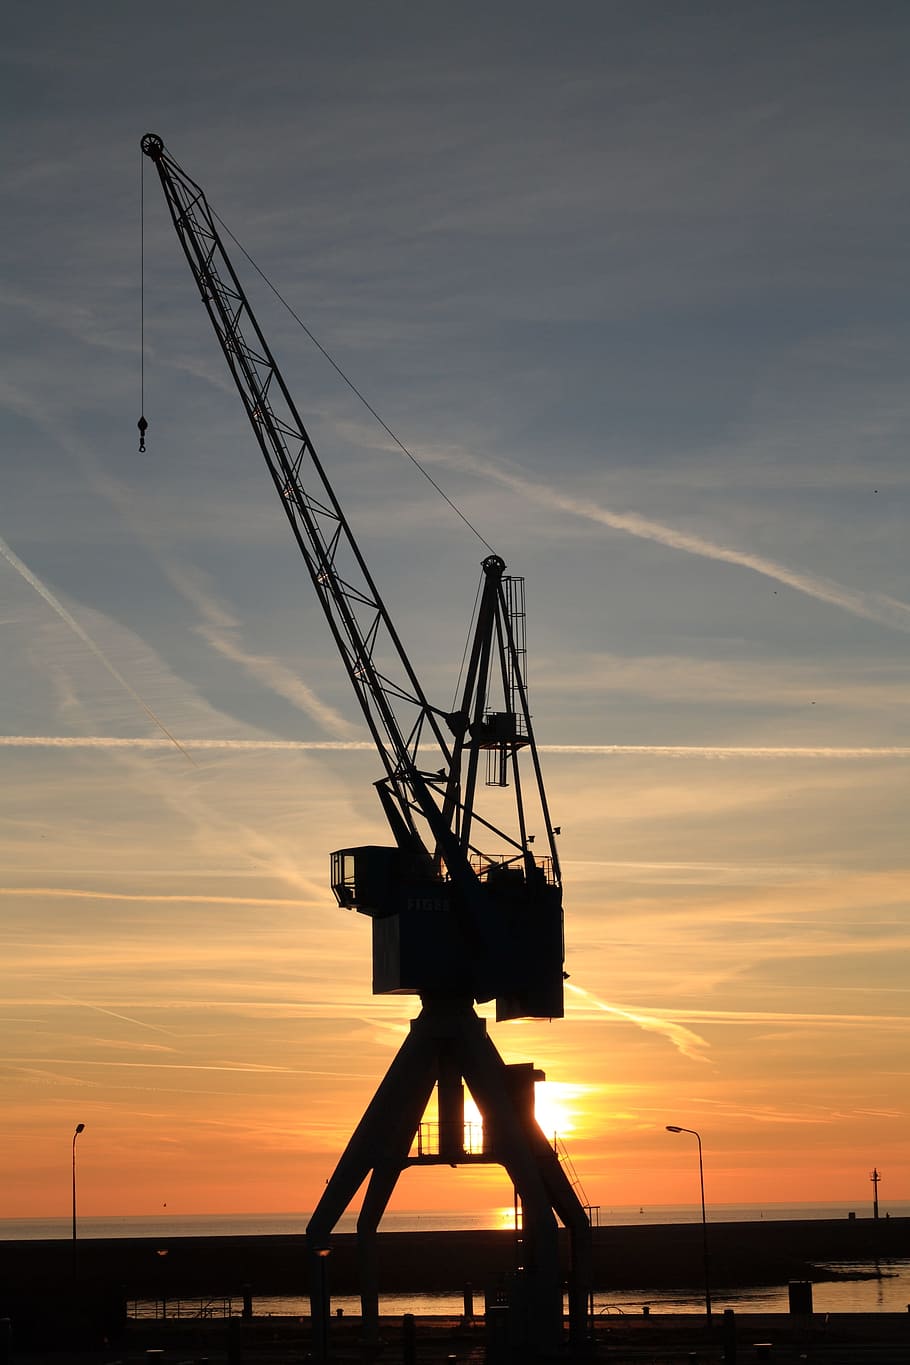 Belanda, Harlingen, Derek, Pelabuhan, matahari terbenam, transportasi barang, kontainer kargo, mesin konstruksi crane, perkapalan, industri